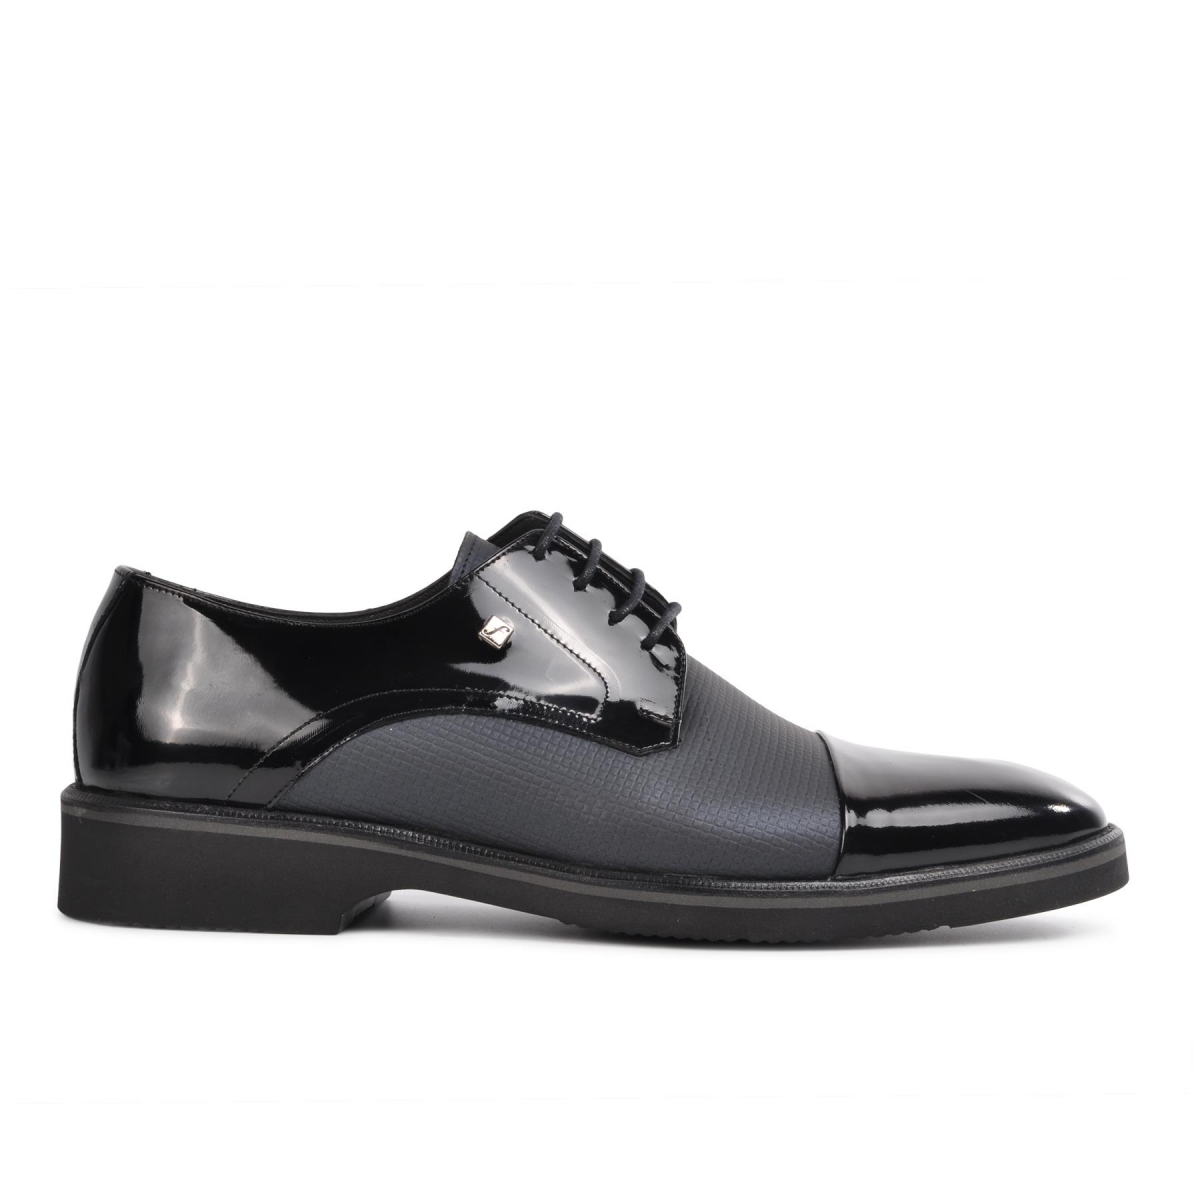 Flo 2583 Siyah-Siyah Rugan Hakiki Deri Erkek Klasik Ayakkabı. 1